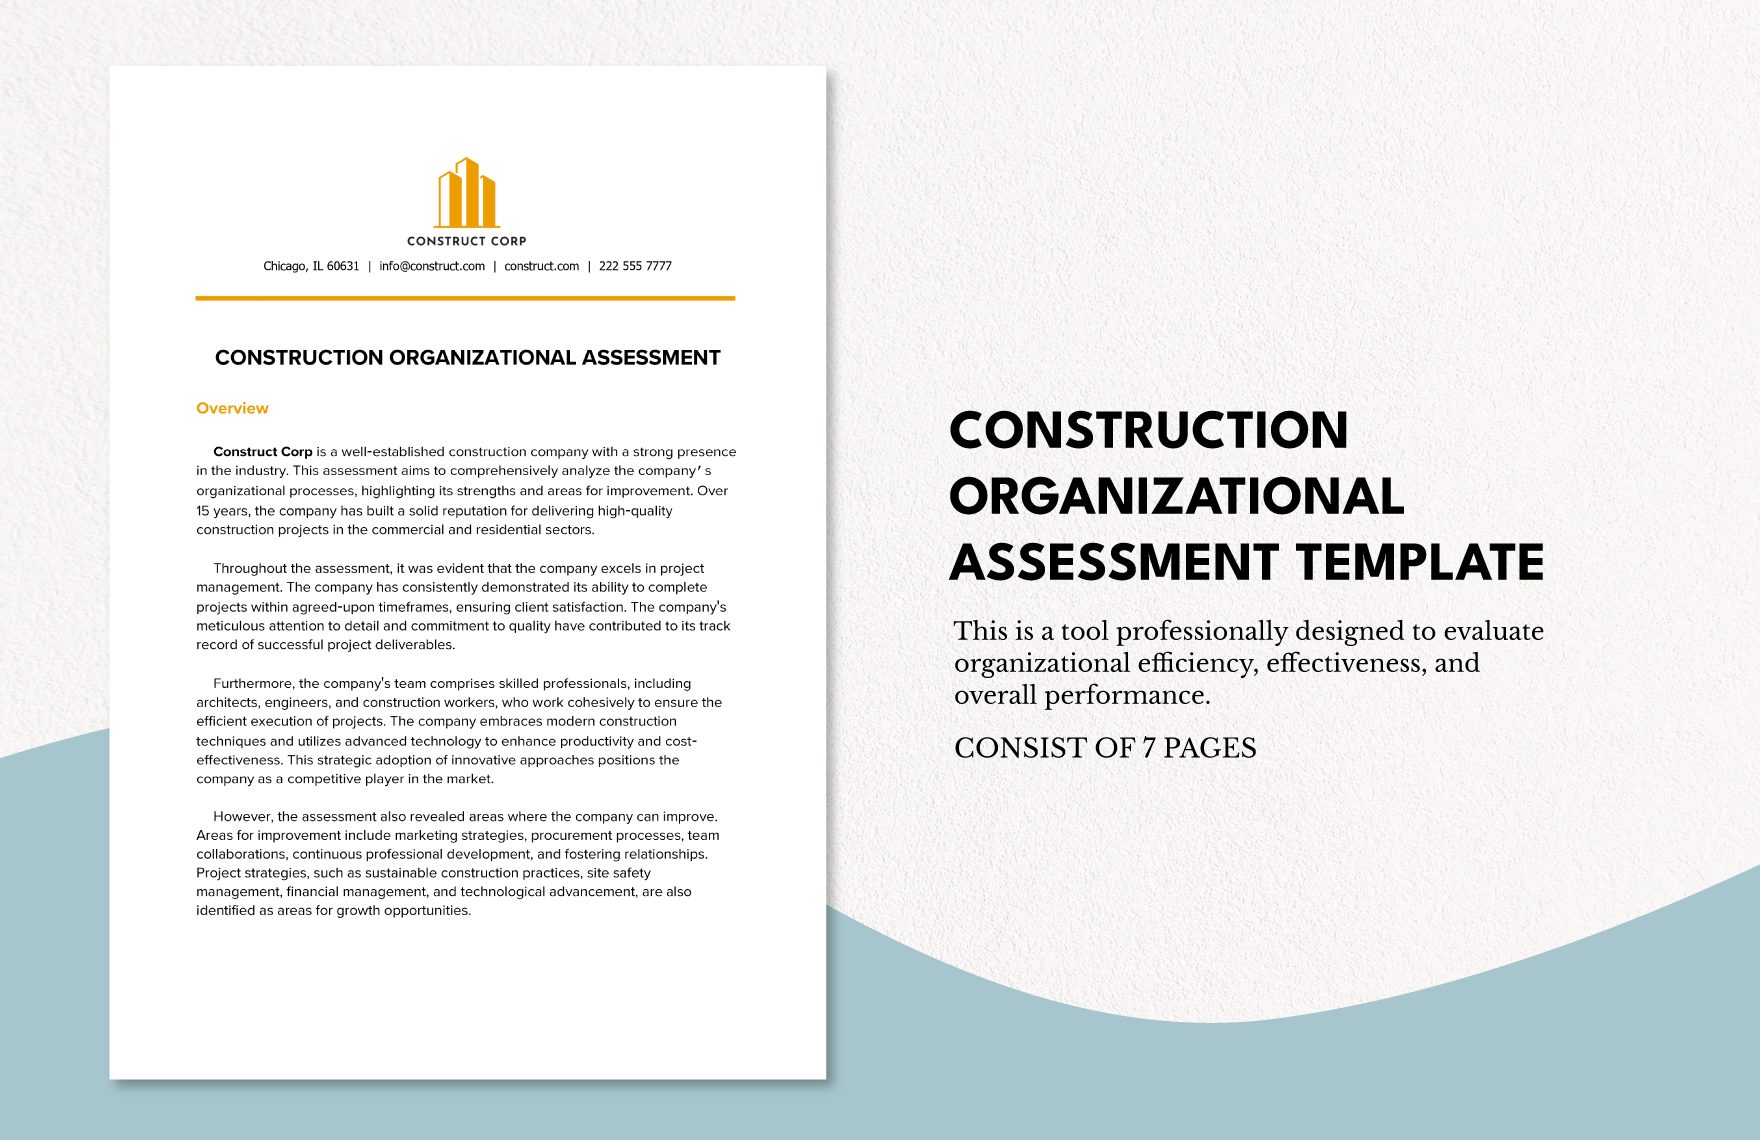 Construction Organizational Assessment Template